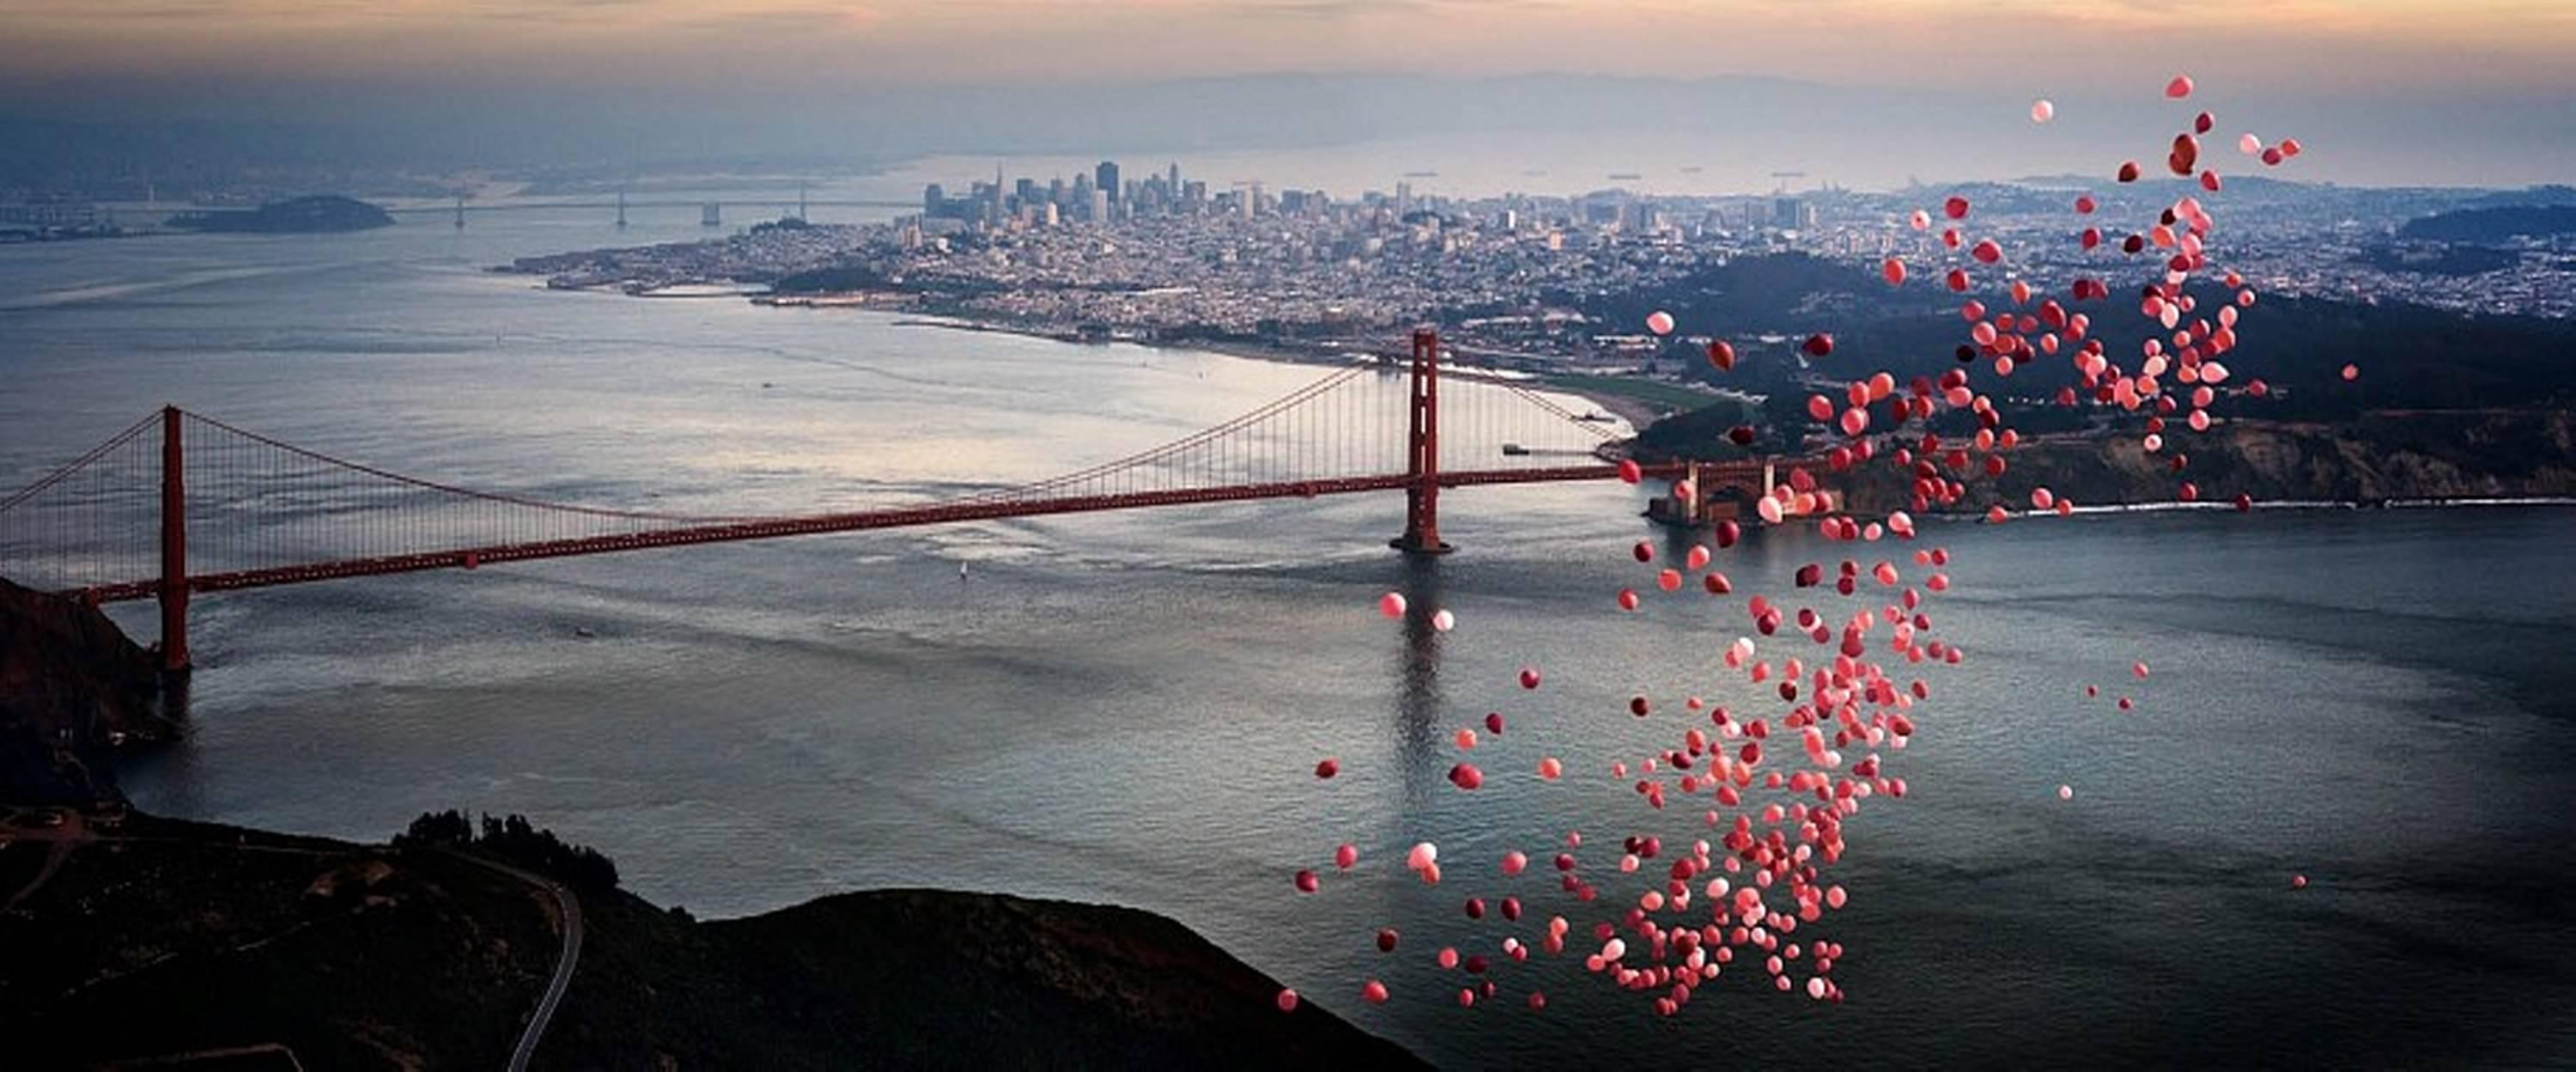 David Drebin Color Photograph - Balloons over San Francisco